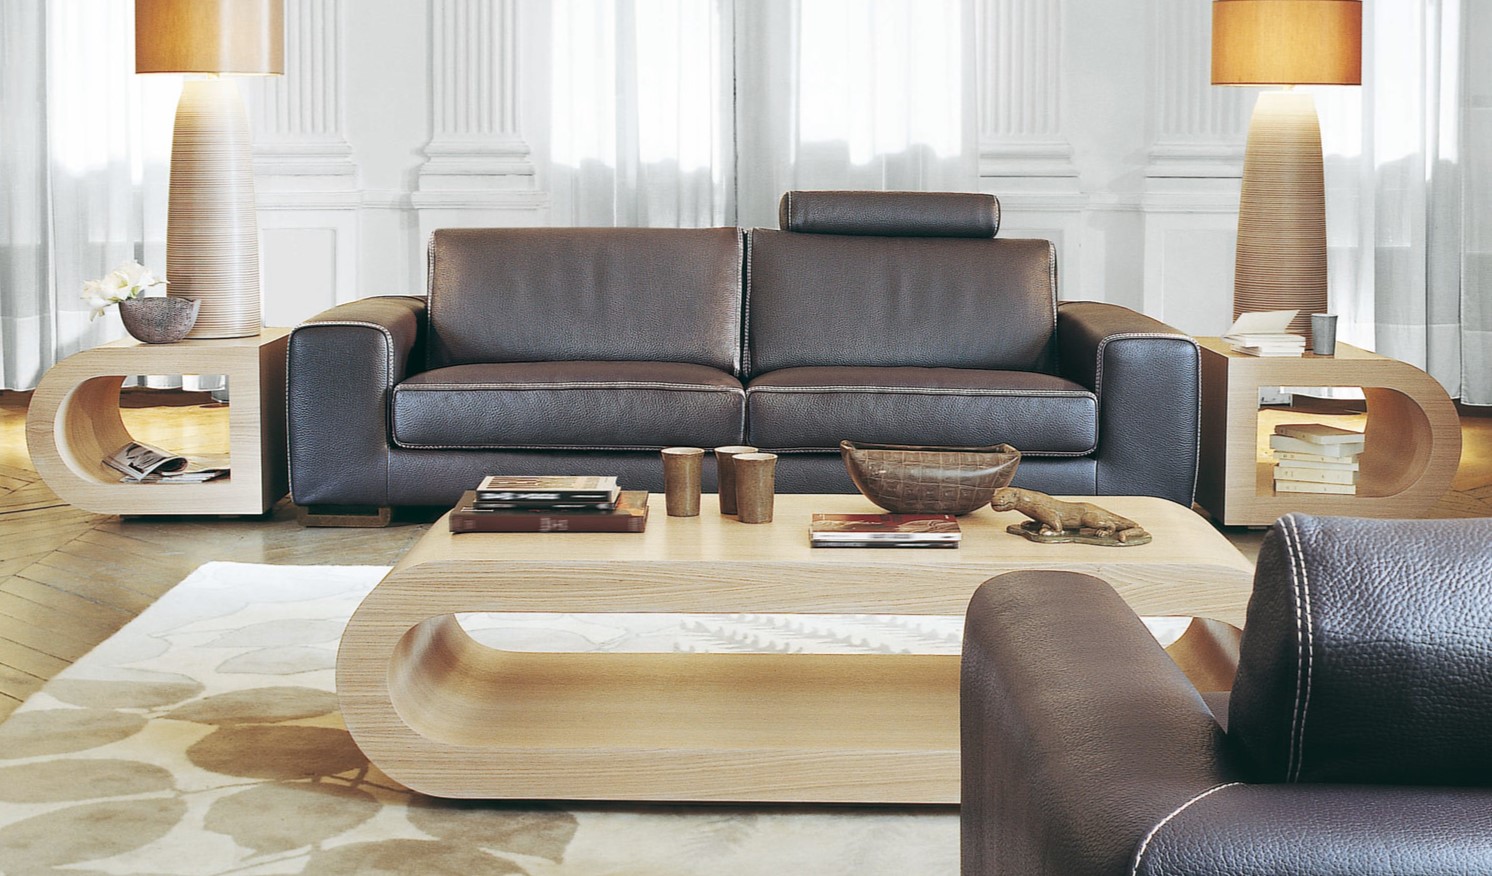 Темно-коричневый диван из натуральной кожи отлично дополняет светлый интерьер гостиной